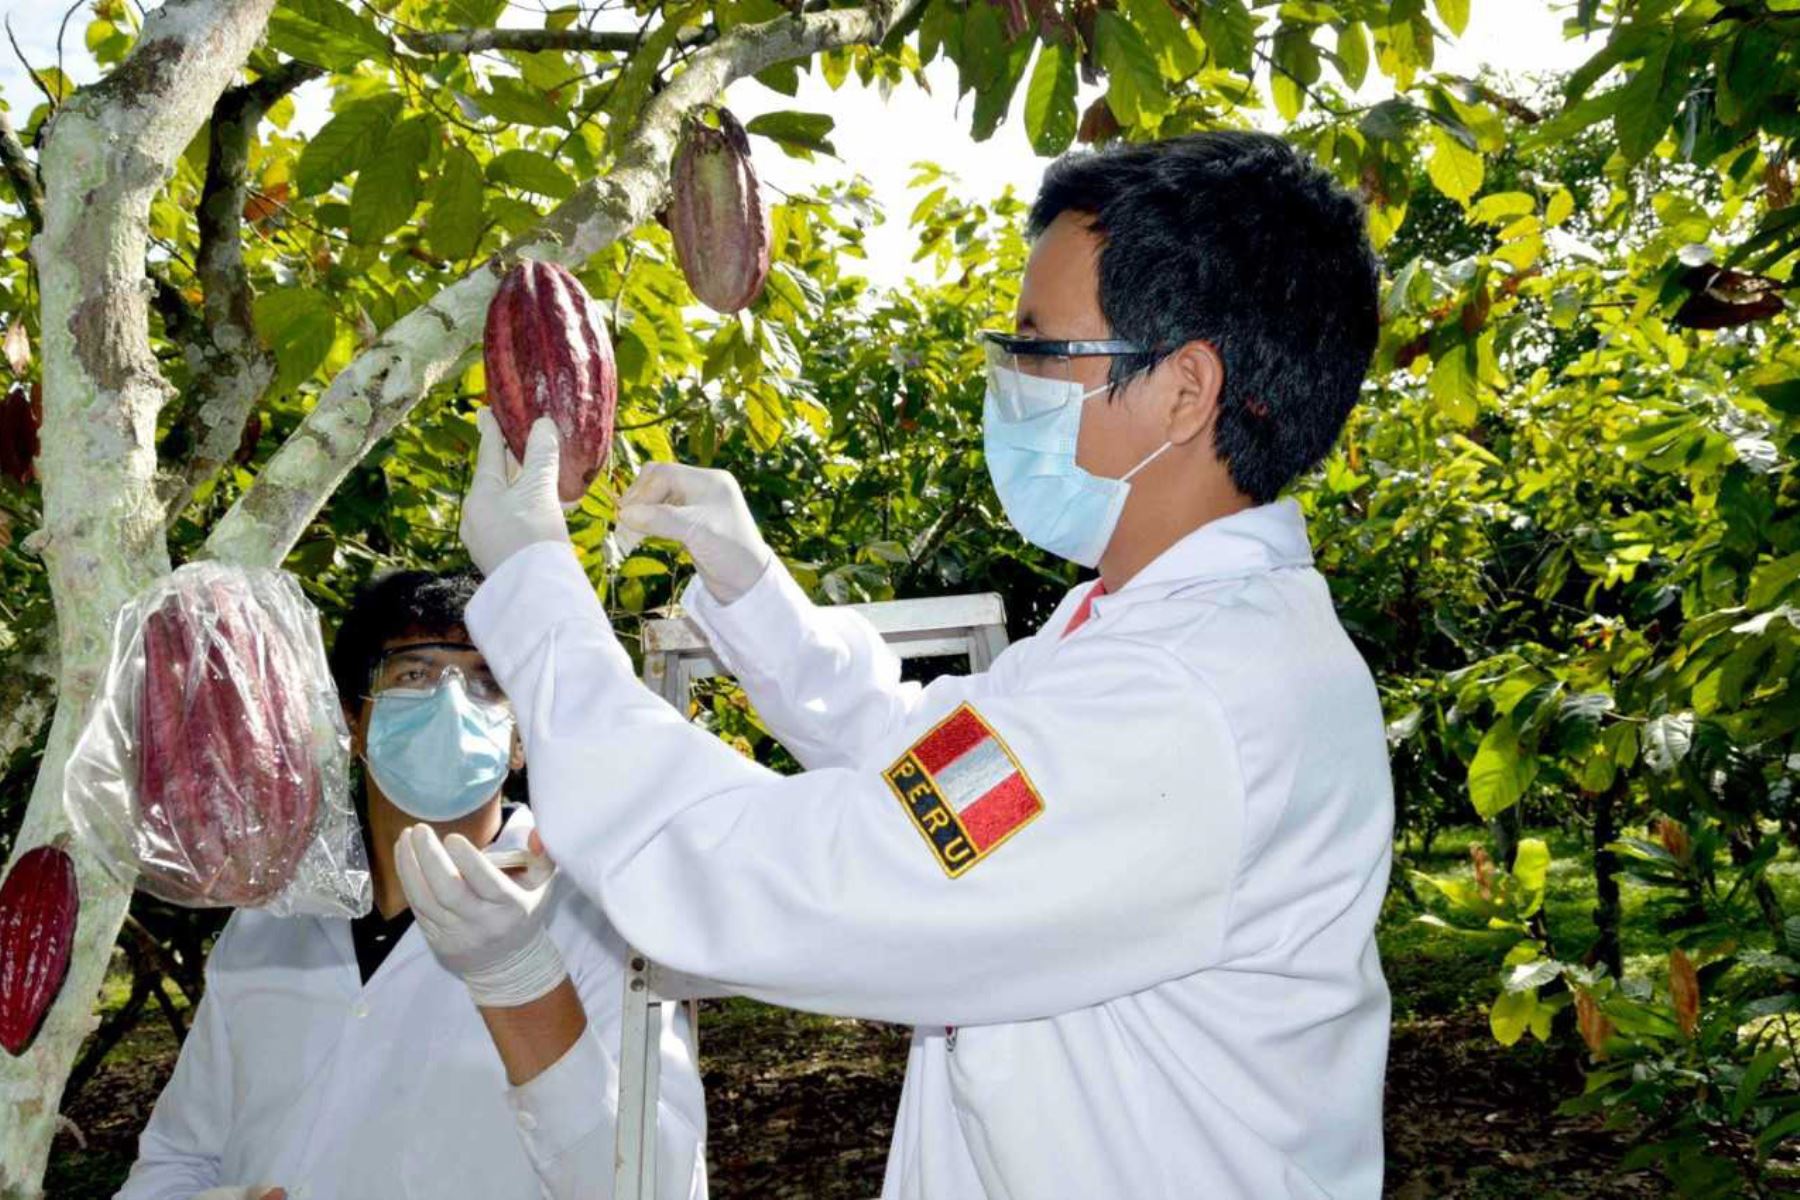 La Asociación Peruana de Productores de Cacao (Appcacao) ha elaborado una agenda de innovación tecnológica que permitirá impulsar el desarrollo competitivo y sostenible del cultivo de cacao fino y de aroma de los productores de las regiones de Piura, Tumbes, Amazonas y Ayacucho.